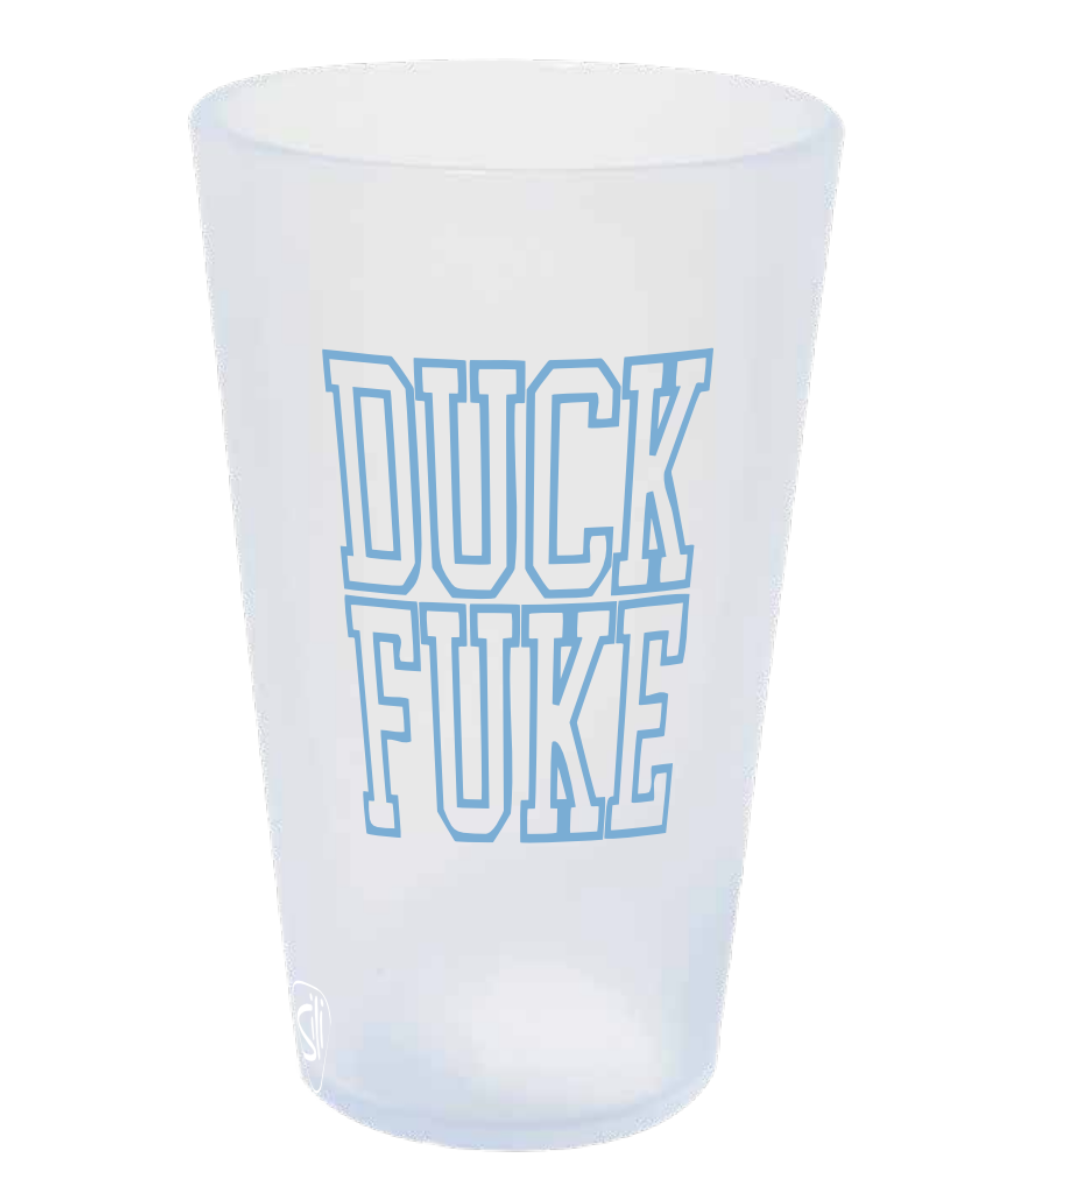 Duck Fuke 16 oz Silipint Cup by Shrunken Head